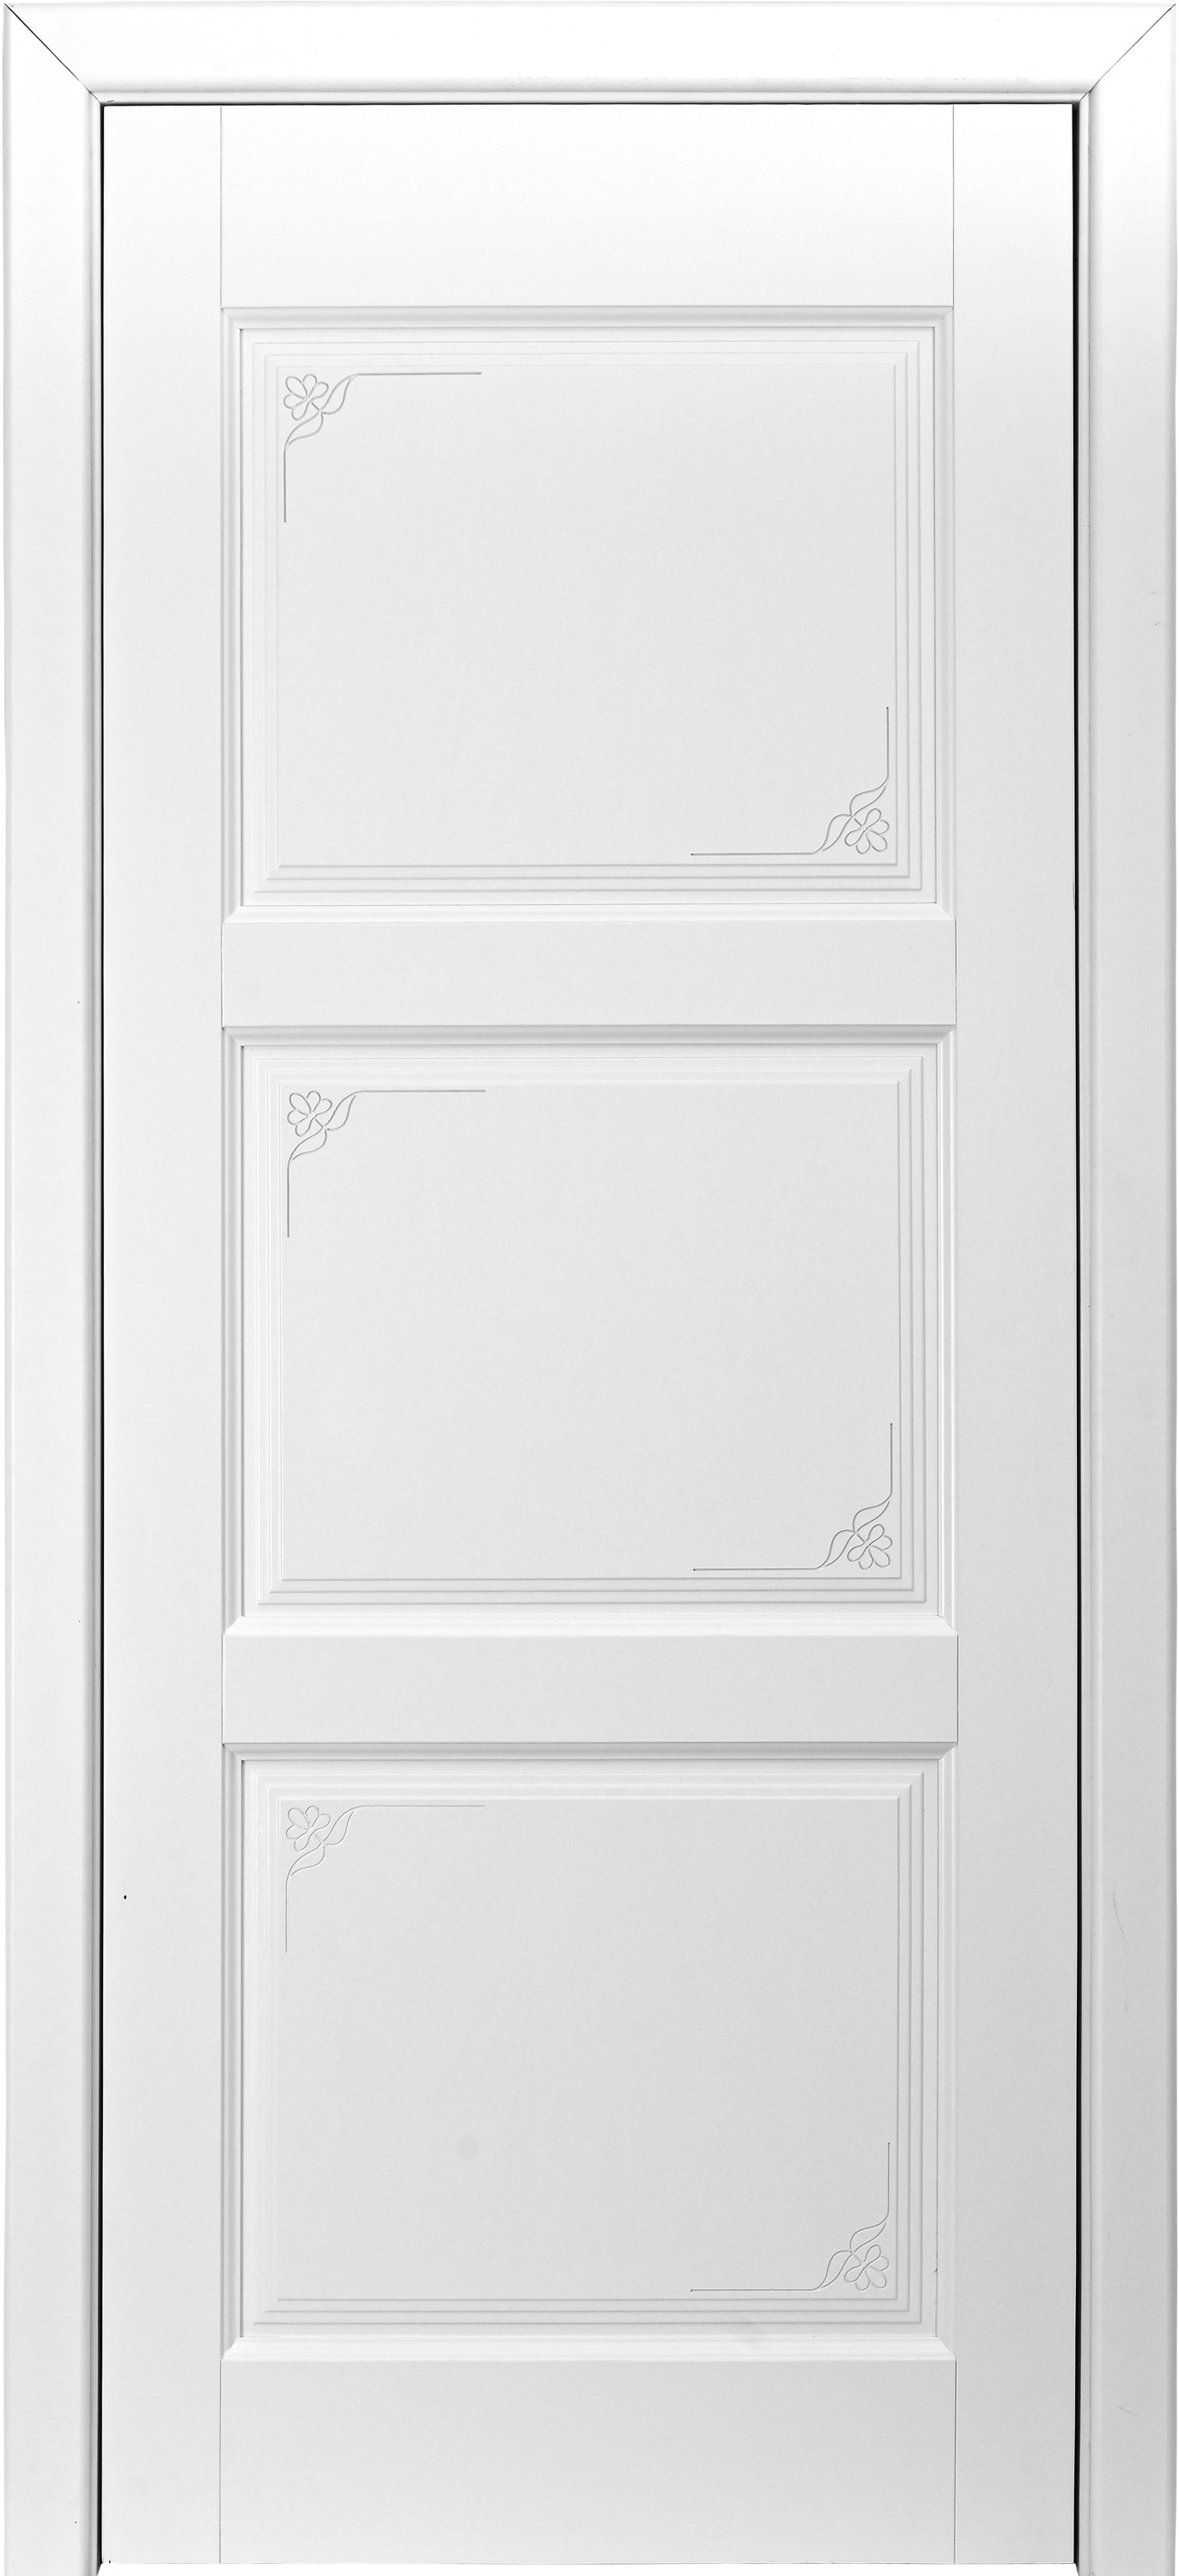 Pušinės durys aklinos (M117)